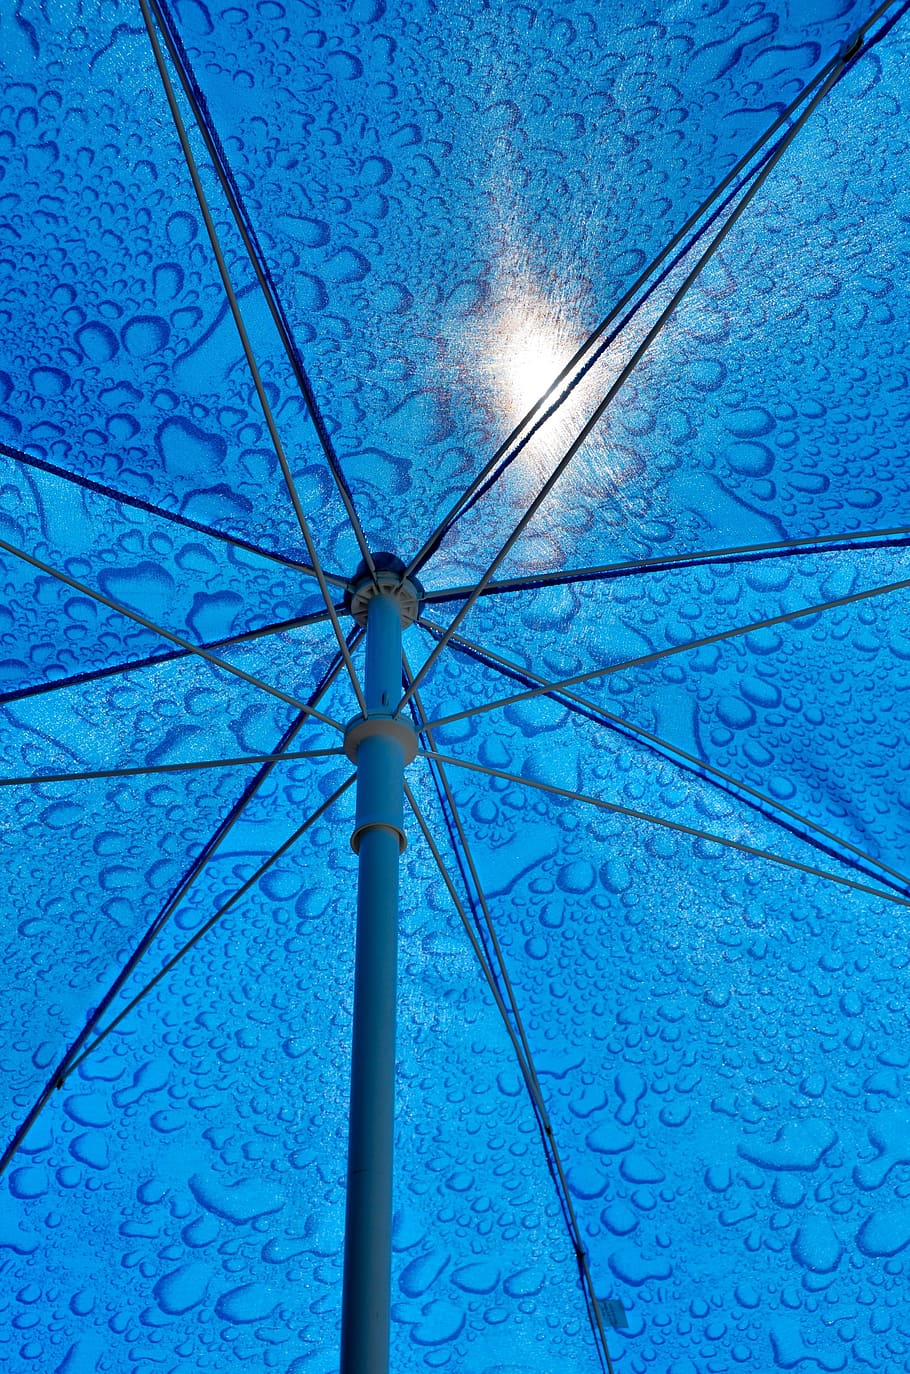 screen, frame, sun protection, parasol, covering, market umbrella